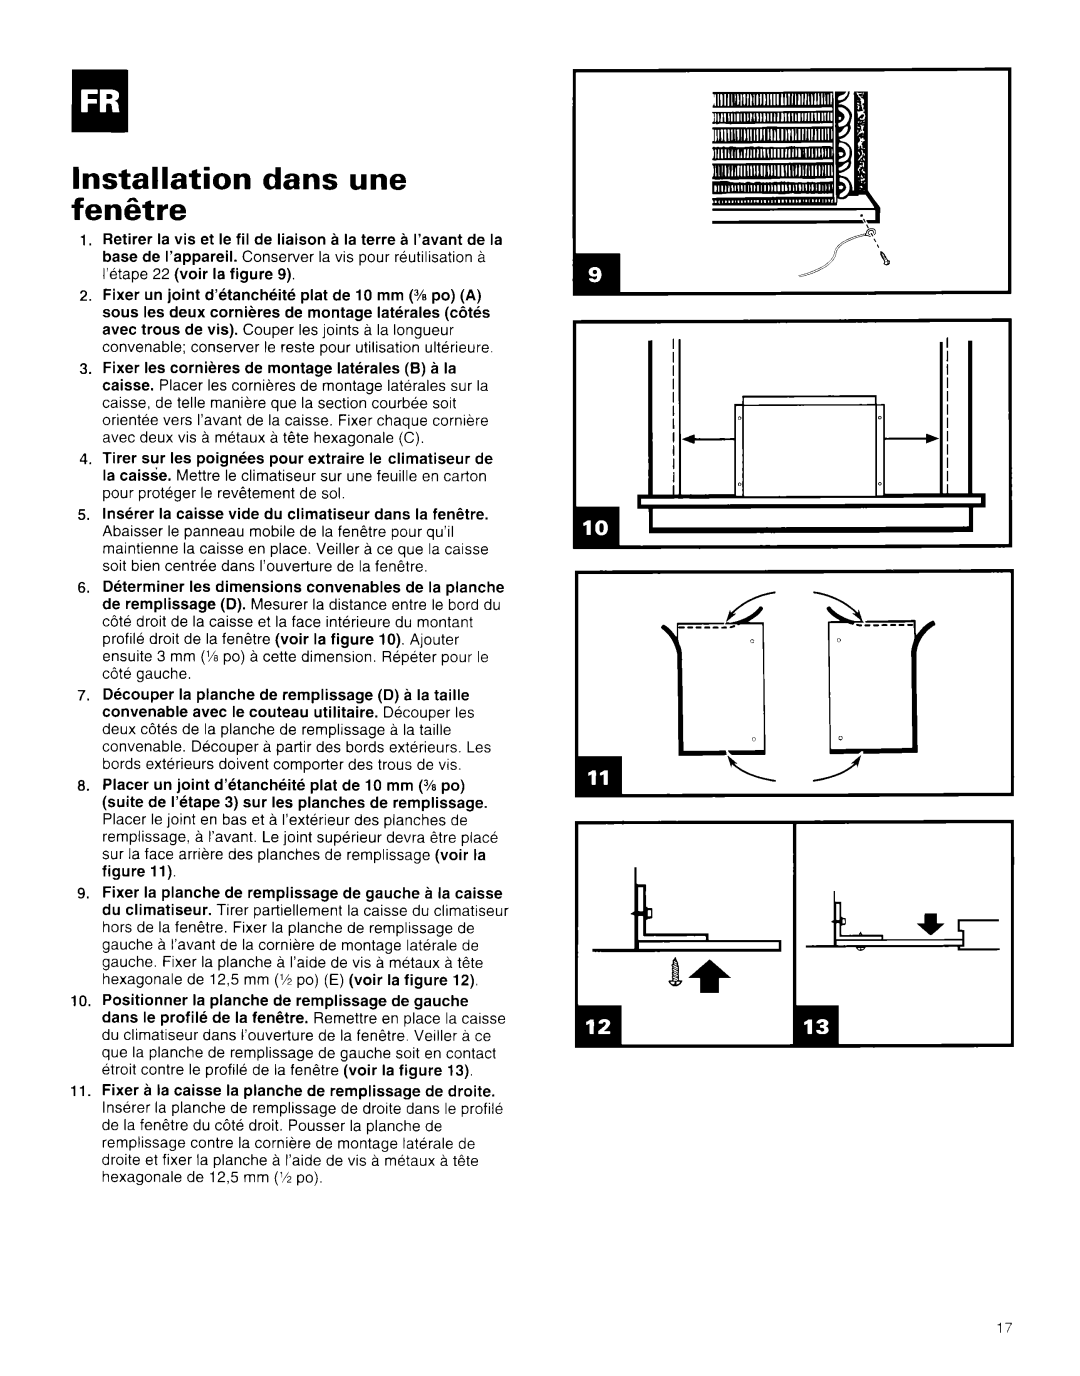 Whirlpool AR1800XA0 manual Installation dans une fenetre 